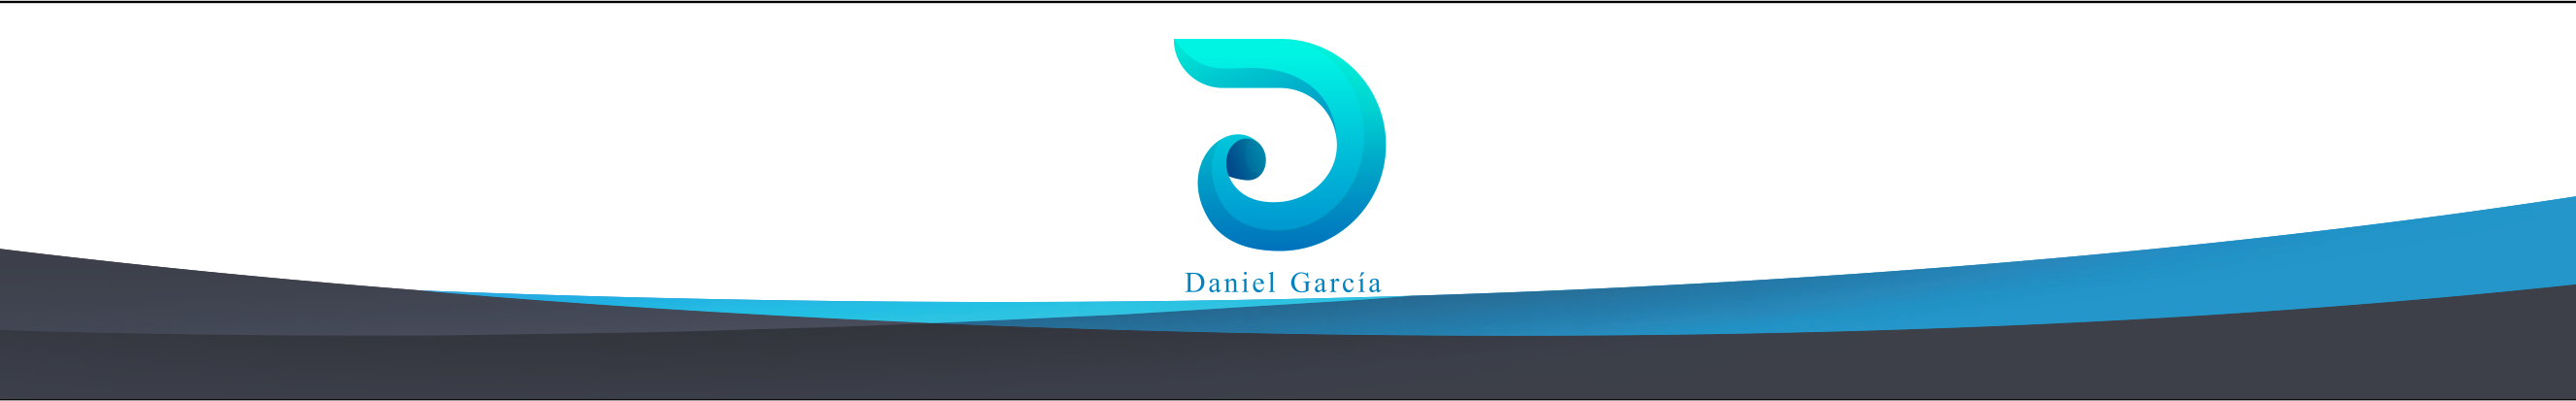 Banner de perfil de Daniel garcia